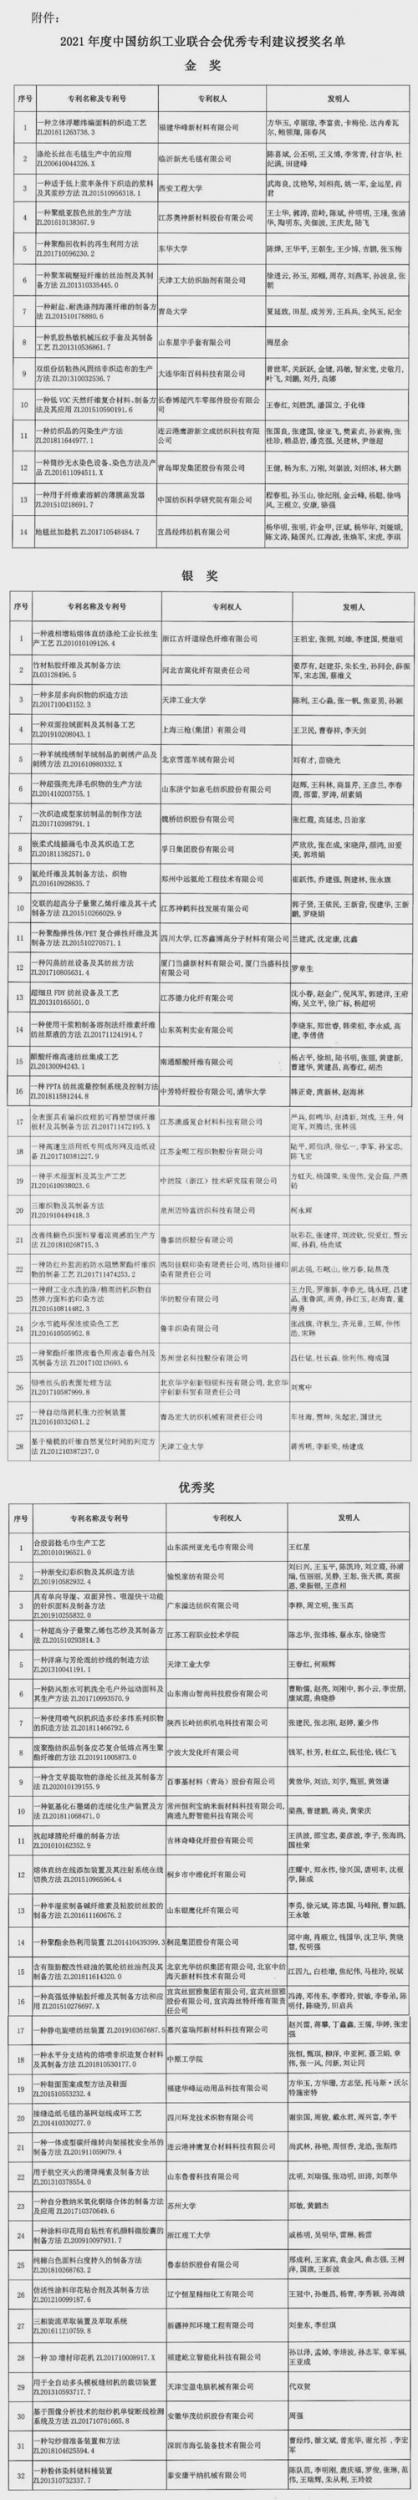 2021年度中国纺联优秀专利建议授奖名单公示